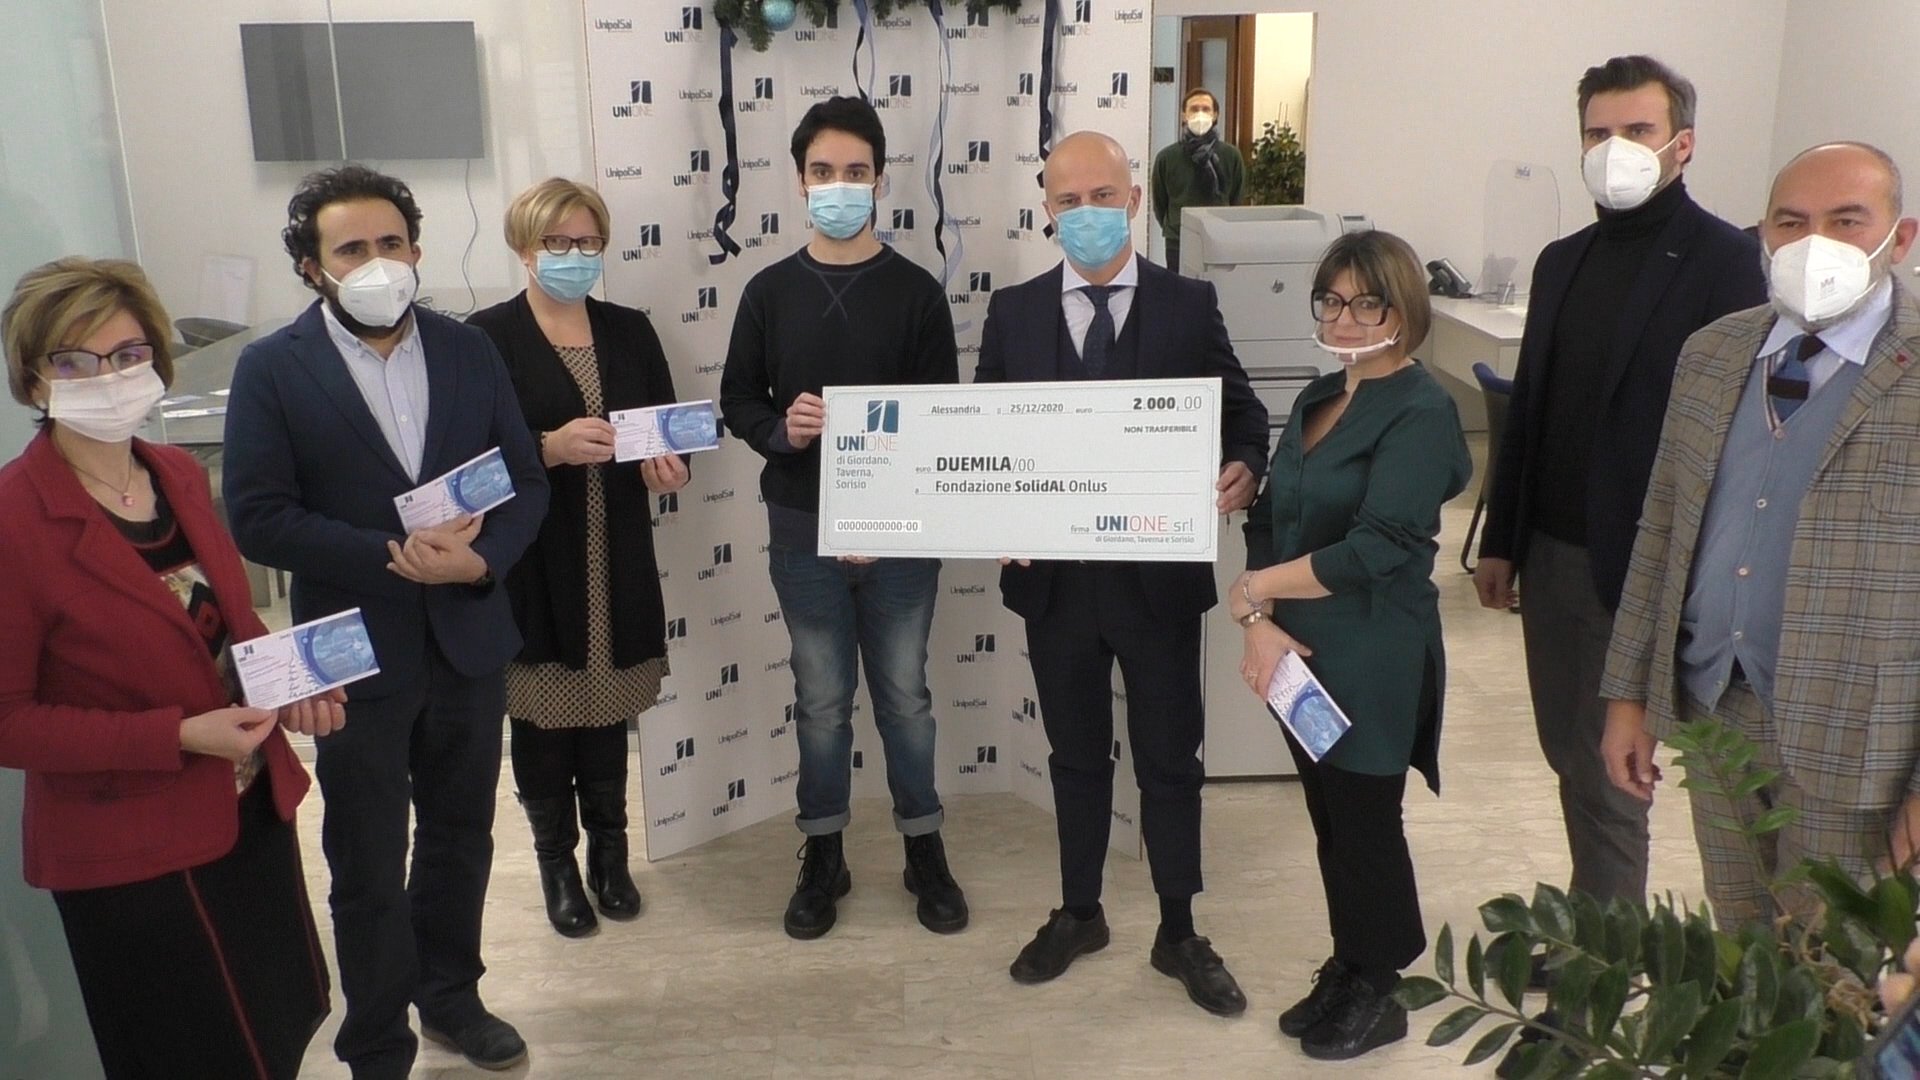 Agenzia di assicurazione UniOne dona 2 mila euro a Solidal per aiutare la ricerca sul mesotelioma